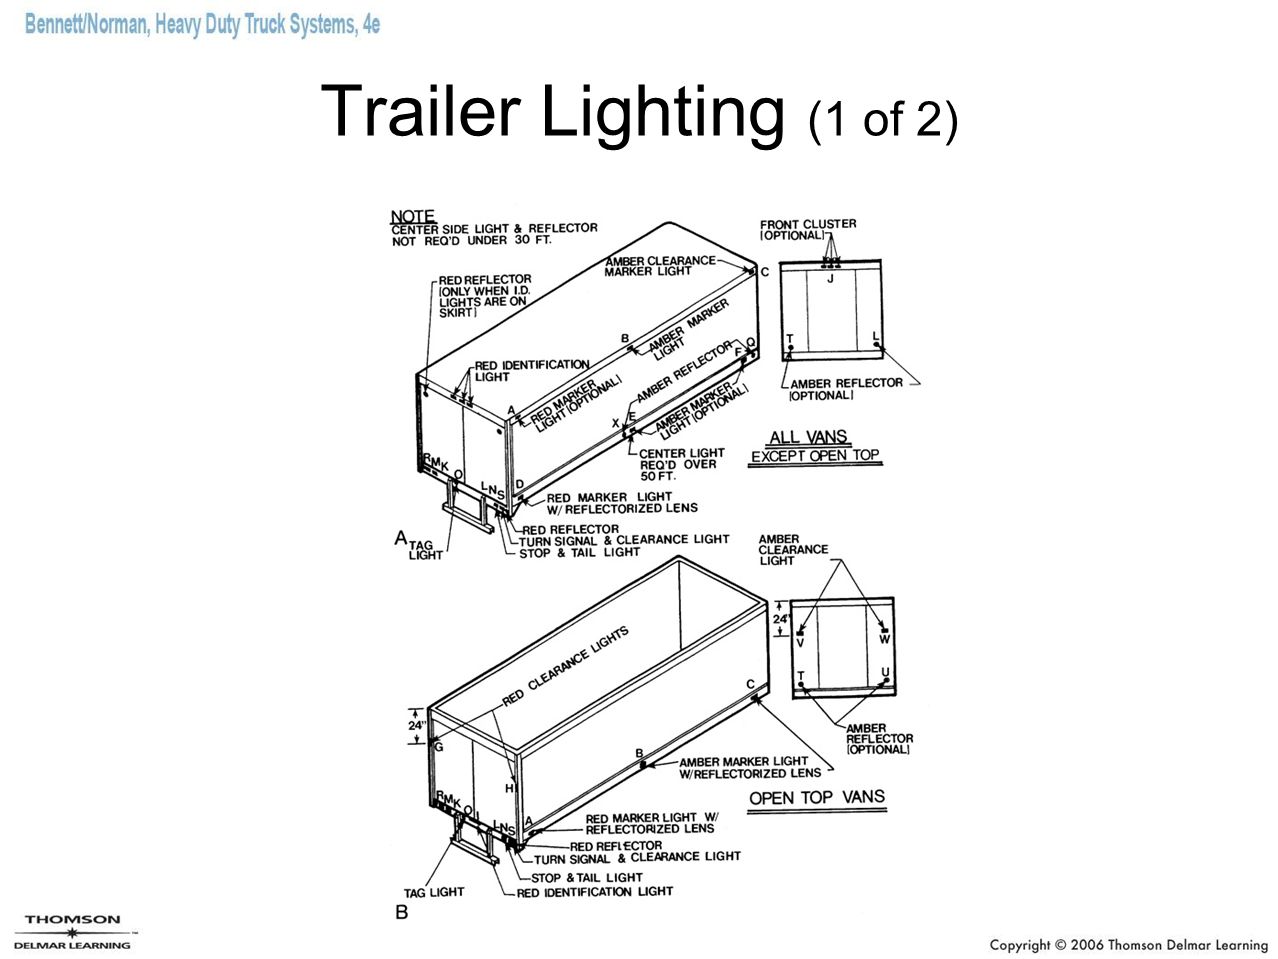 Trailer Lighting (1 of 2)